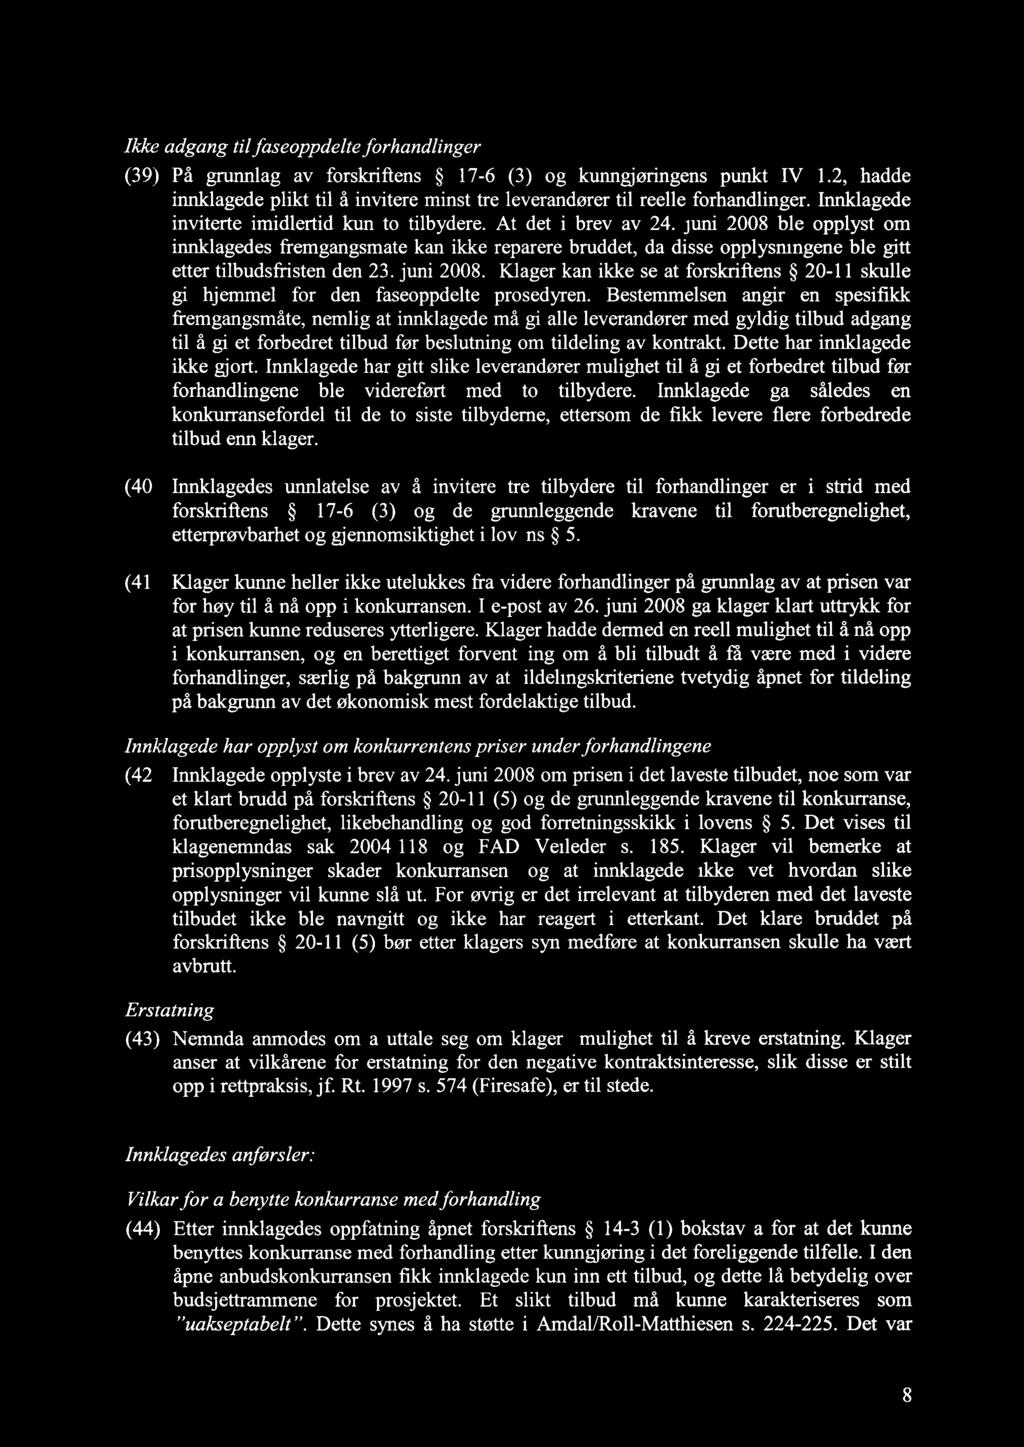 Ikke adgang til faseoppdelte forhandlinger (39) På grunnlag av forskriftens 17-6 (3) og kunngjøringens punkt IV 1.